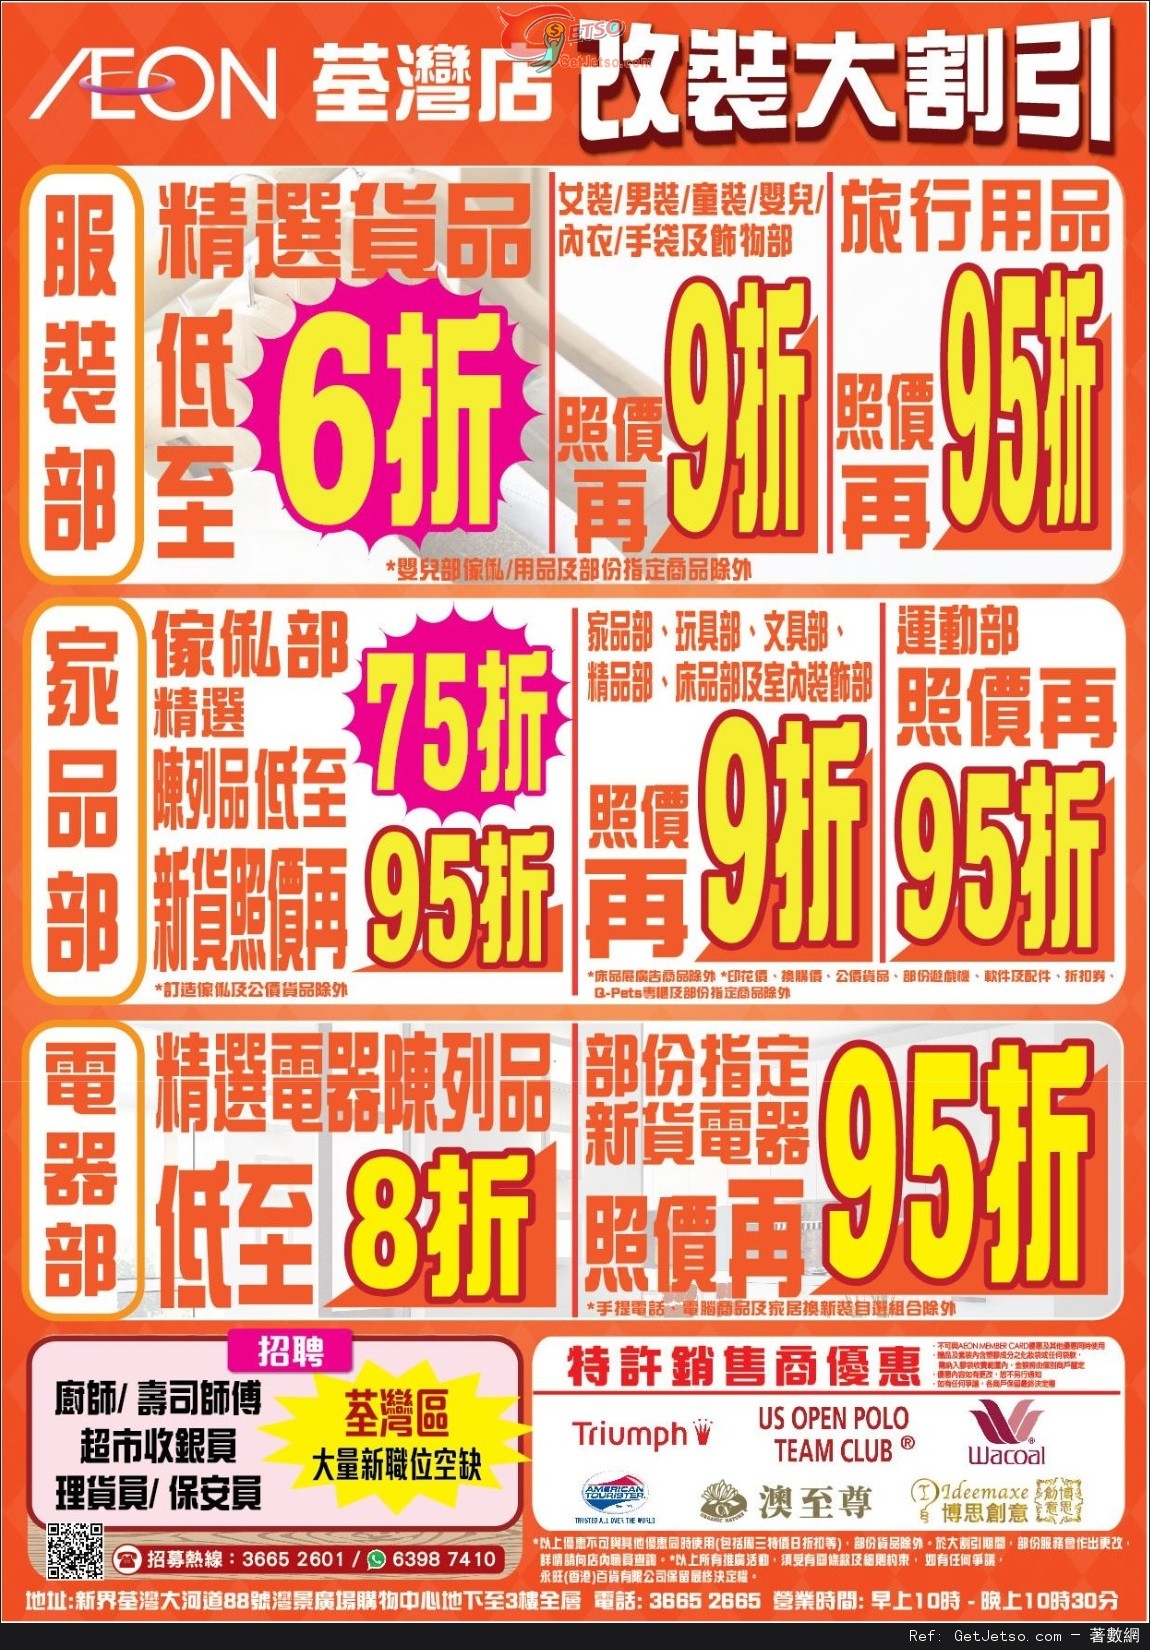 AEON 荃灣改裝大割引第二階段減價優惠(至15年8月2日)圖片2